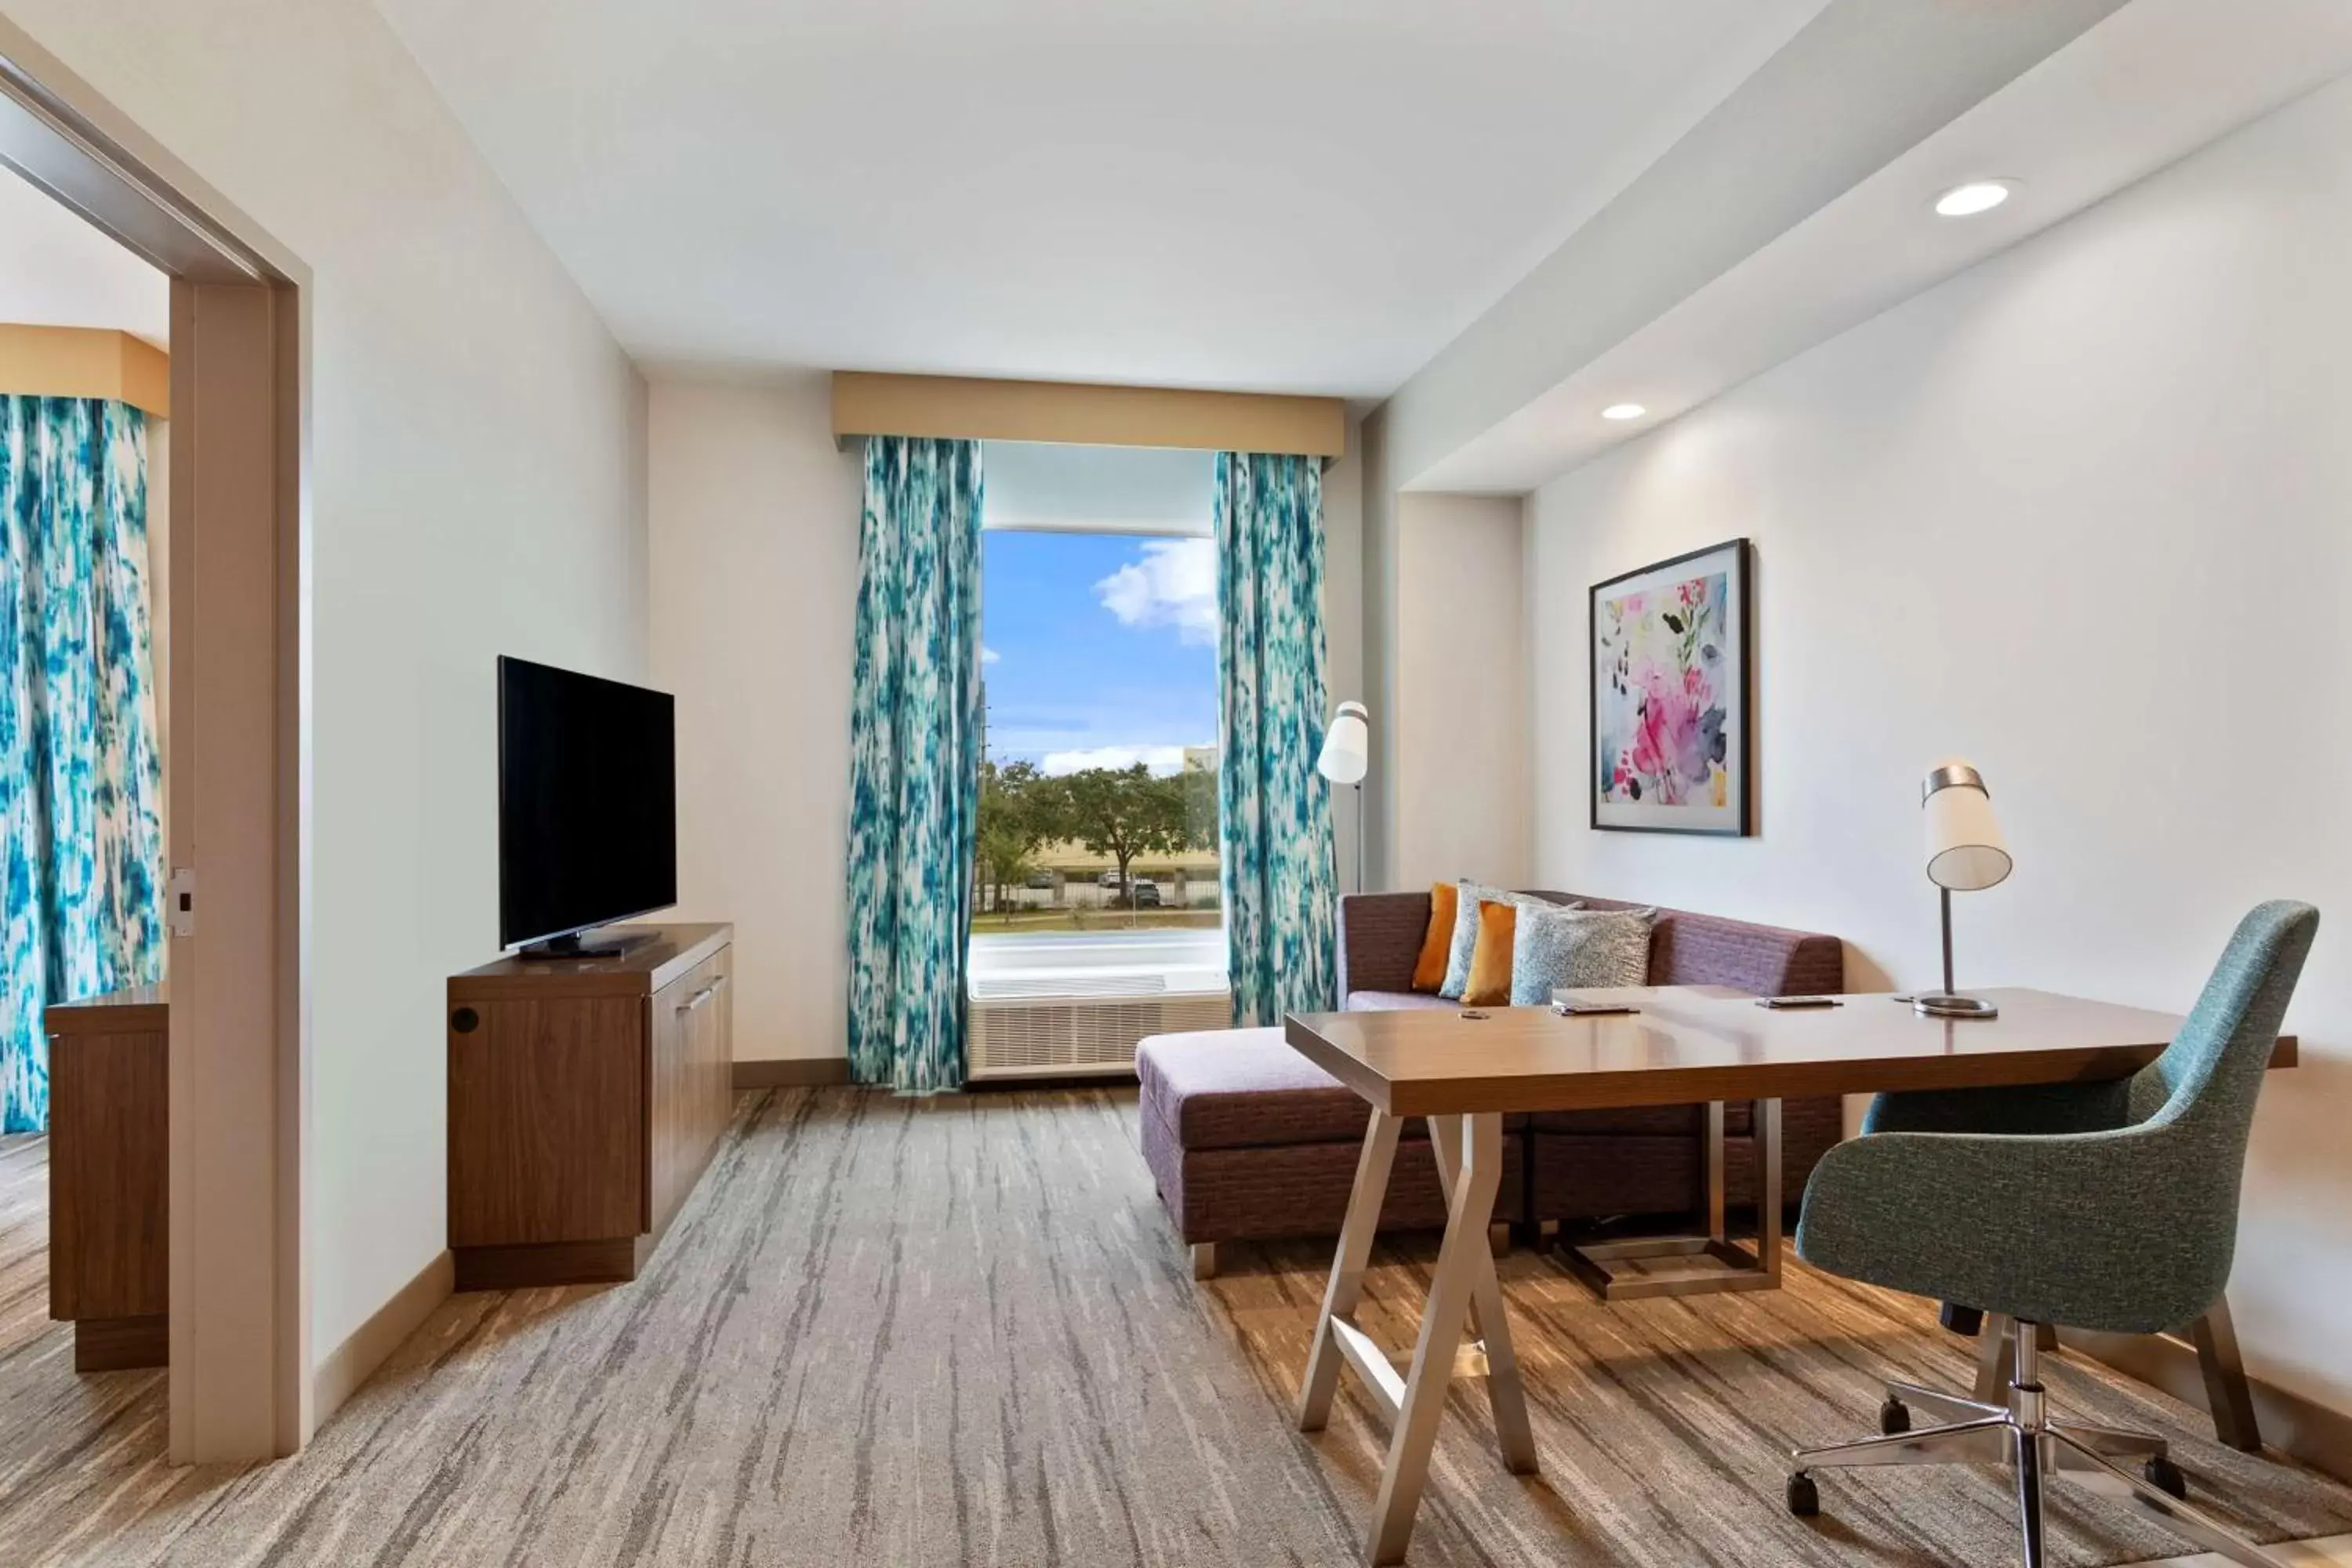 Bedroom in Hilton Garden Inn Houston Medical Center, TX